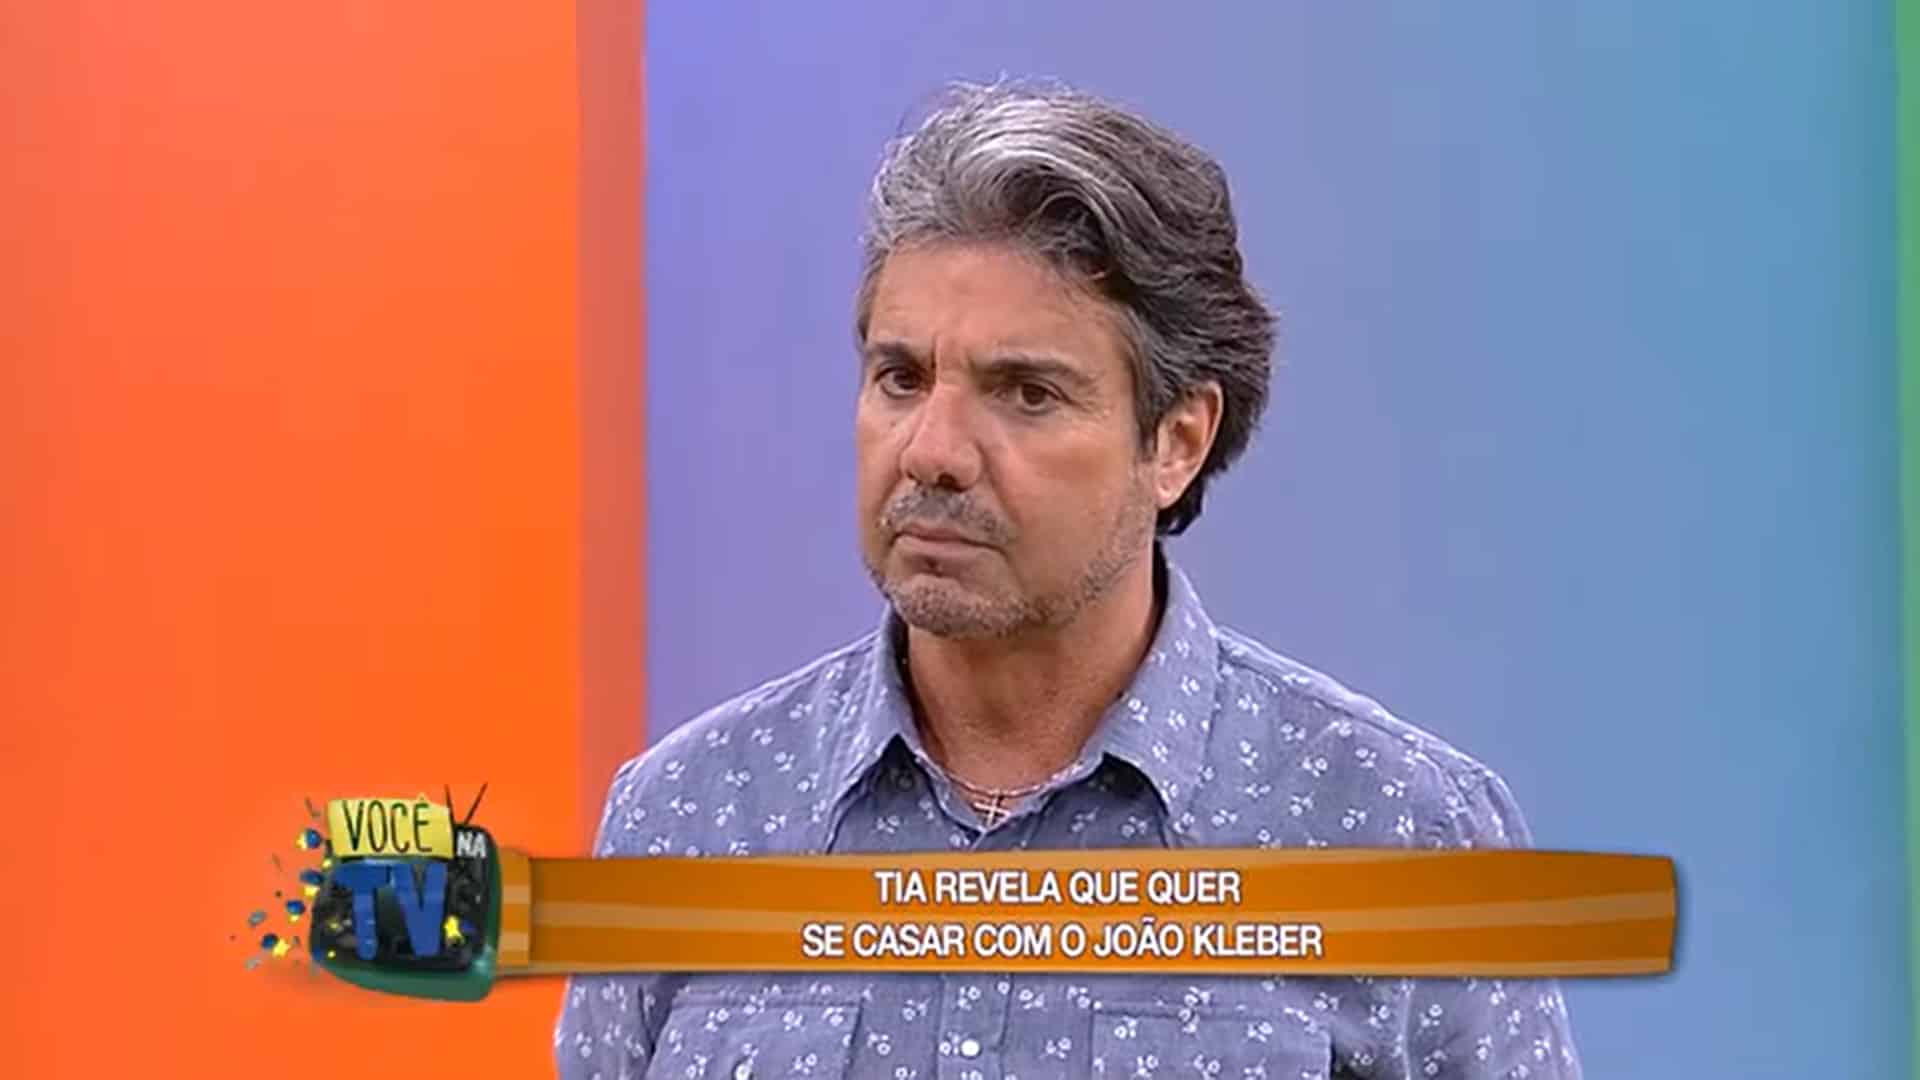 Foto do programa Você na TV, apresentado por João Kleber